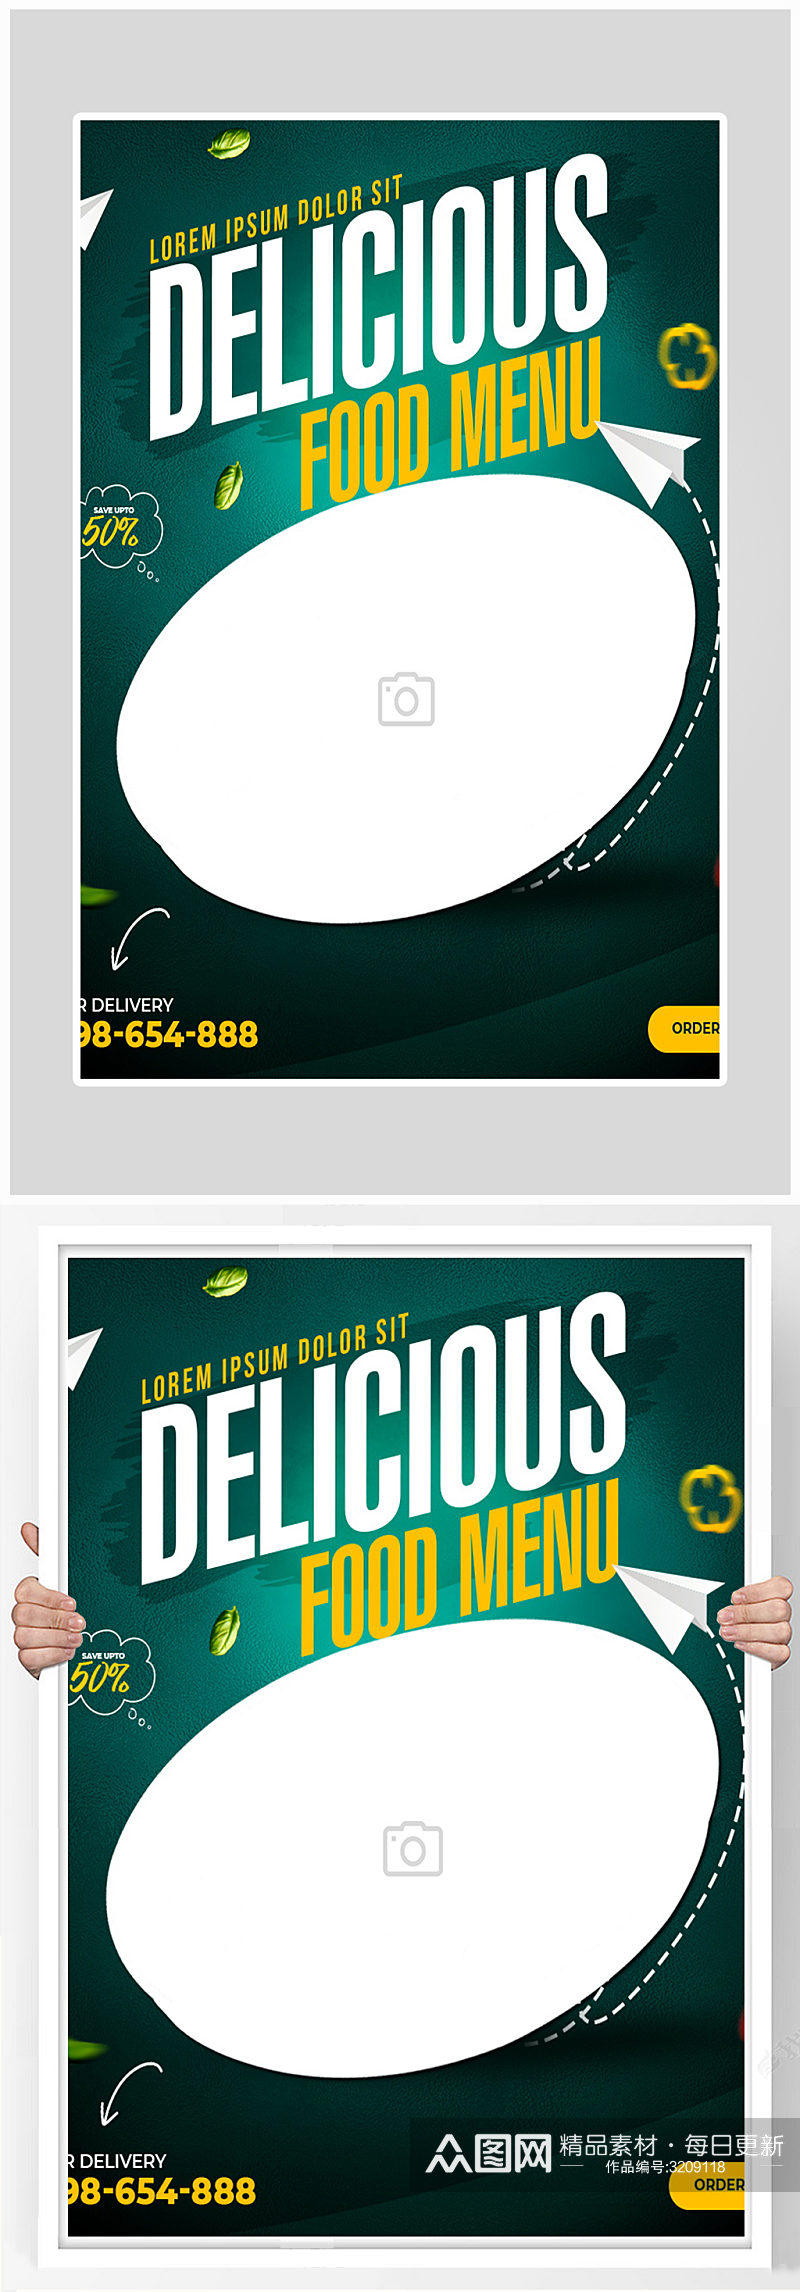 创意简约美食菜单海报设计素材